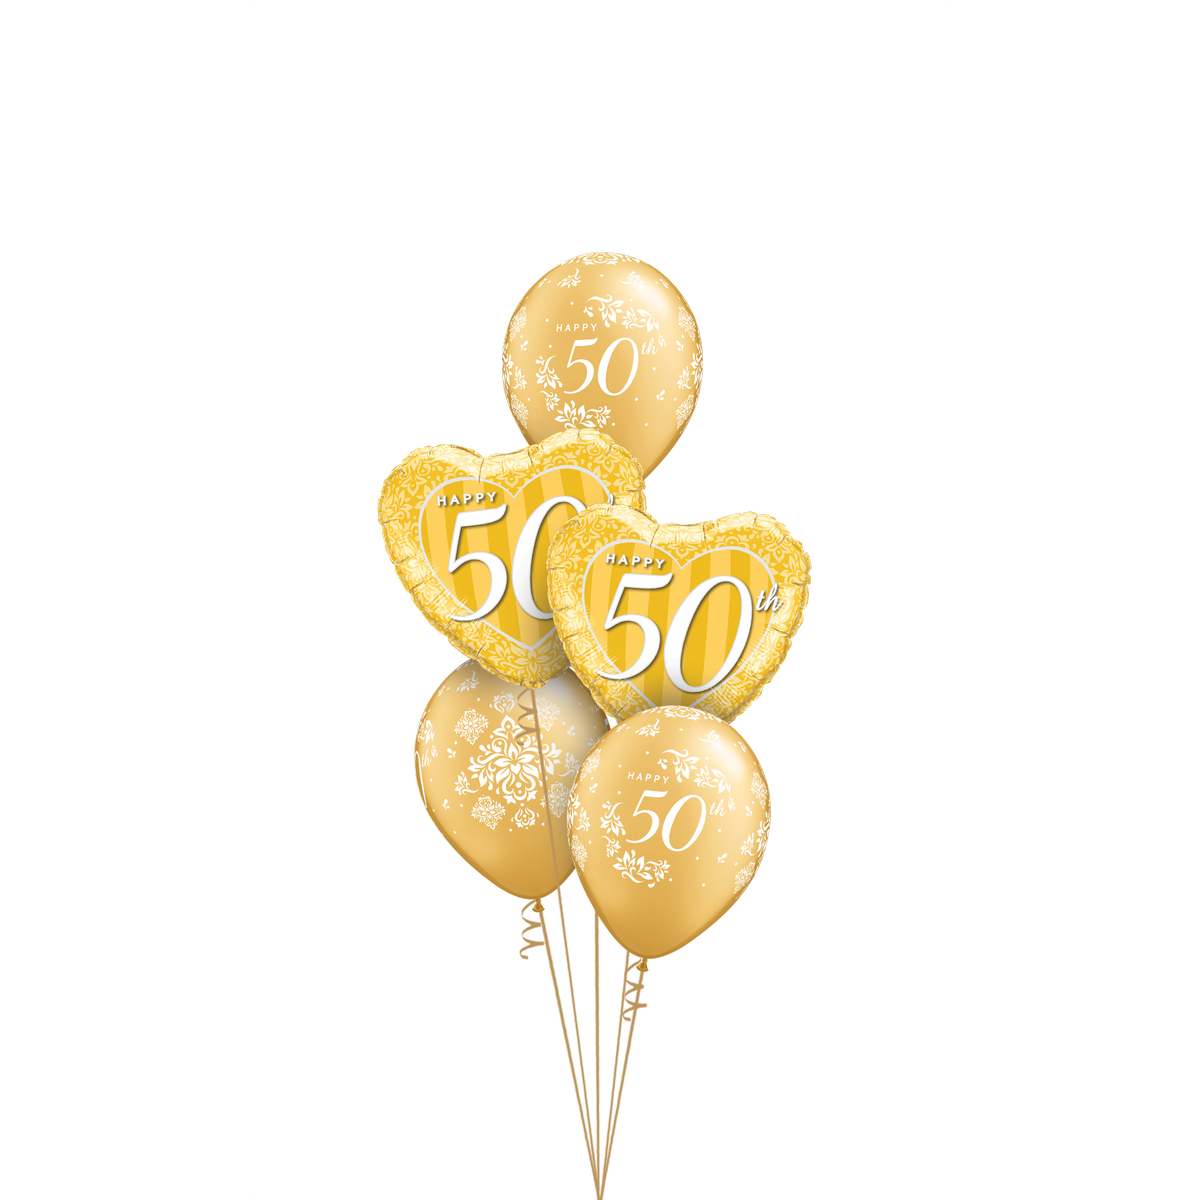 CLASSIC BOUQUET 50 ANNI DI MATRIMONIO - Balloon Express Shop Torino